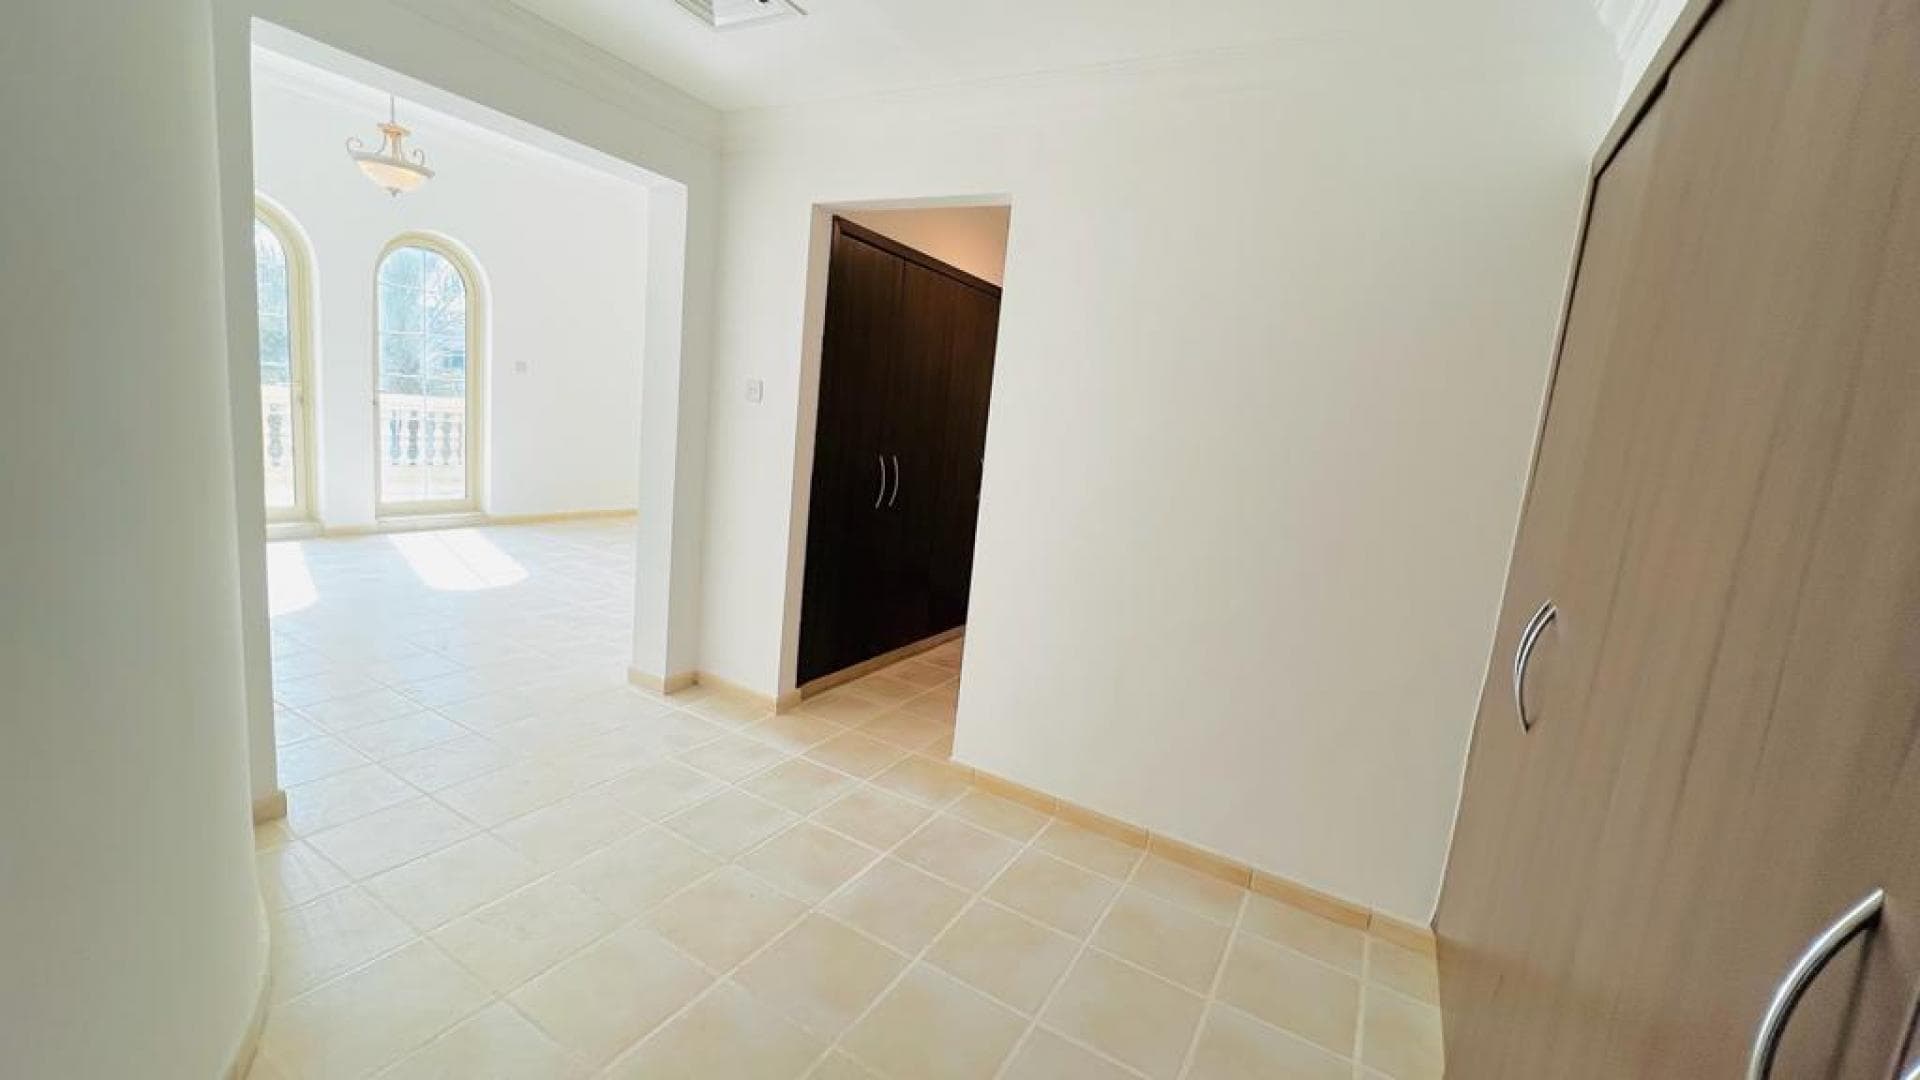 4 Bedroom Villa For Rent Al Thamam 13 Lp18938 157b0b5ec1ff8900.jpeg